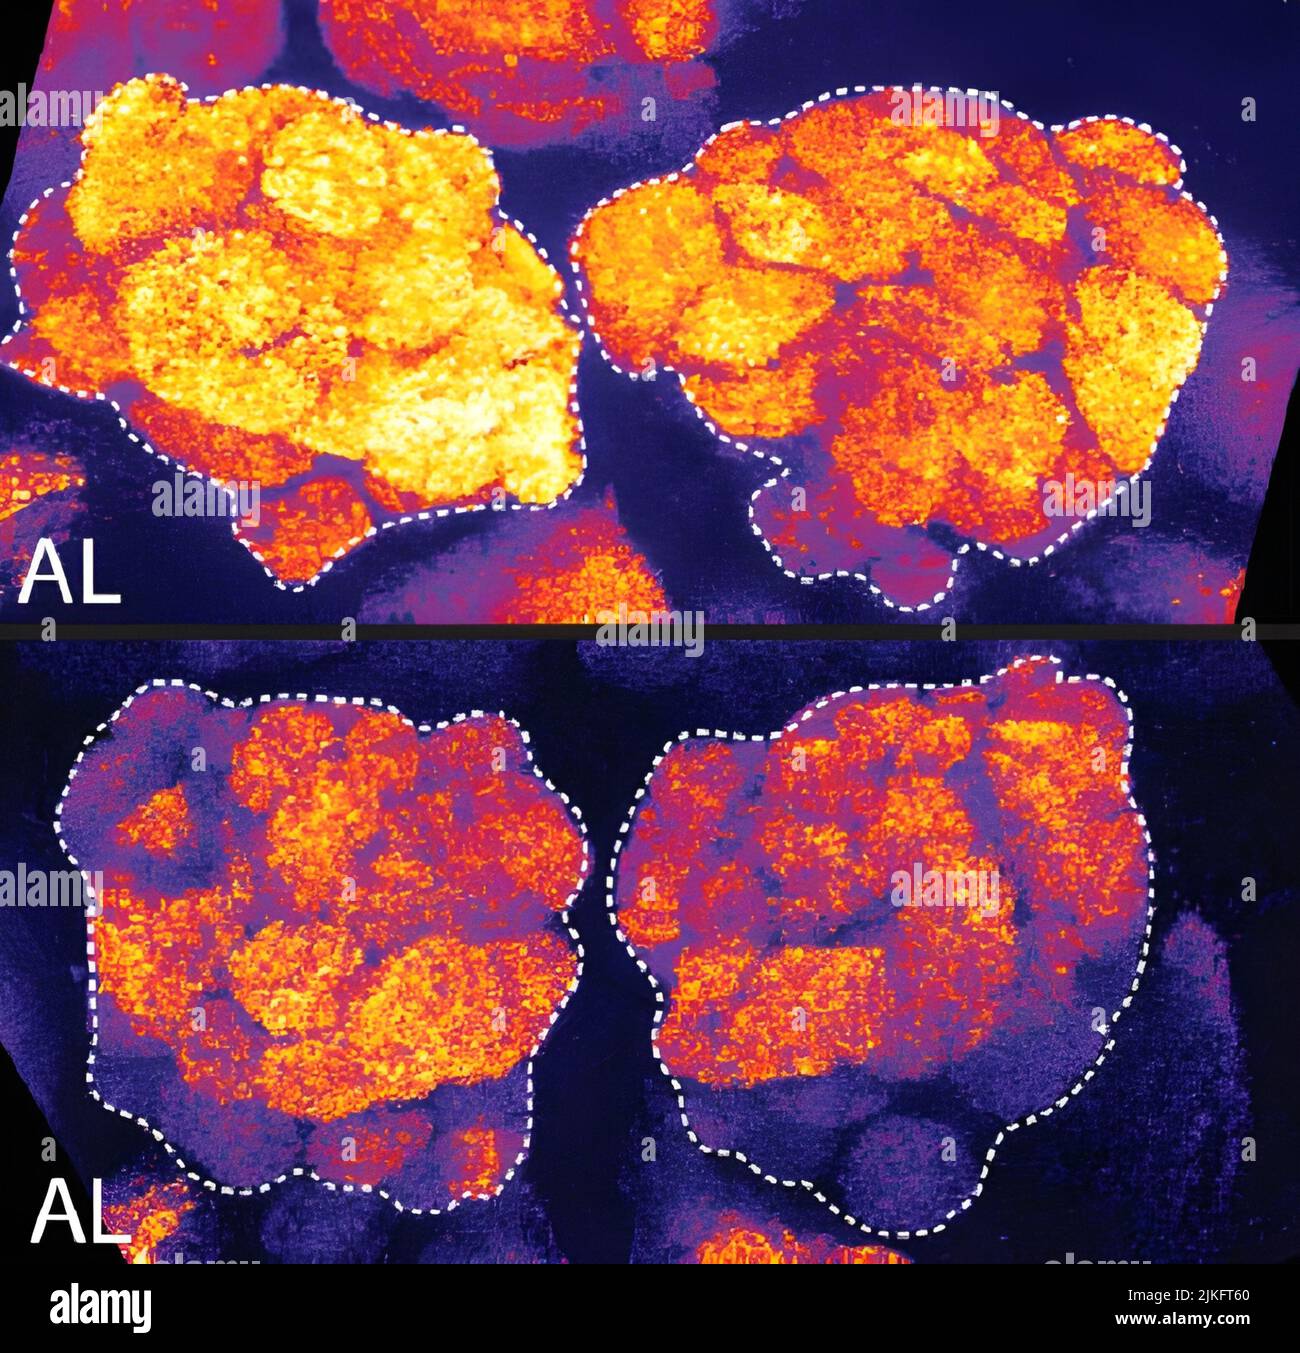 Inoltre, il cervello di una mosca affamata diventa arancione assonnato a causa di Bruchpilot, una proteina di comunicazione tra le cellule cerebrali. Queste aree di colore arancione chiaro del cervello sono associate all'apprendimento. In fondo, una mosca ben riposata mostra livelli inferiori di Bruchpilot, che potrebbe rendere la mosca pronta ad imparare dopo una buona notte di riposo. Queste immagini illustrano i risultati di uno studio dell'aprile 2009 che mostra che il sonno riduce i livelli proteici, suggerendo che tale downscaling e quot resetta il cervello ai livelli normali di attività sinaptica e lo rende pronto per imparare dopo una notte riposante. Foto Stock